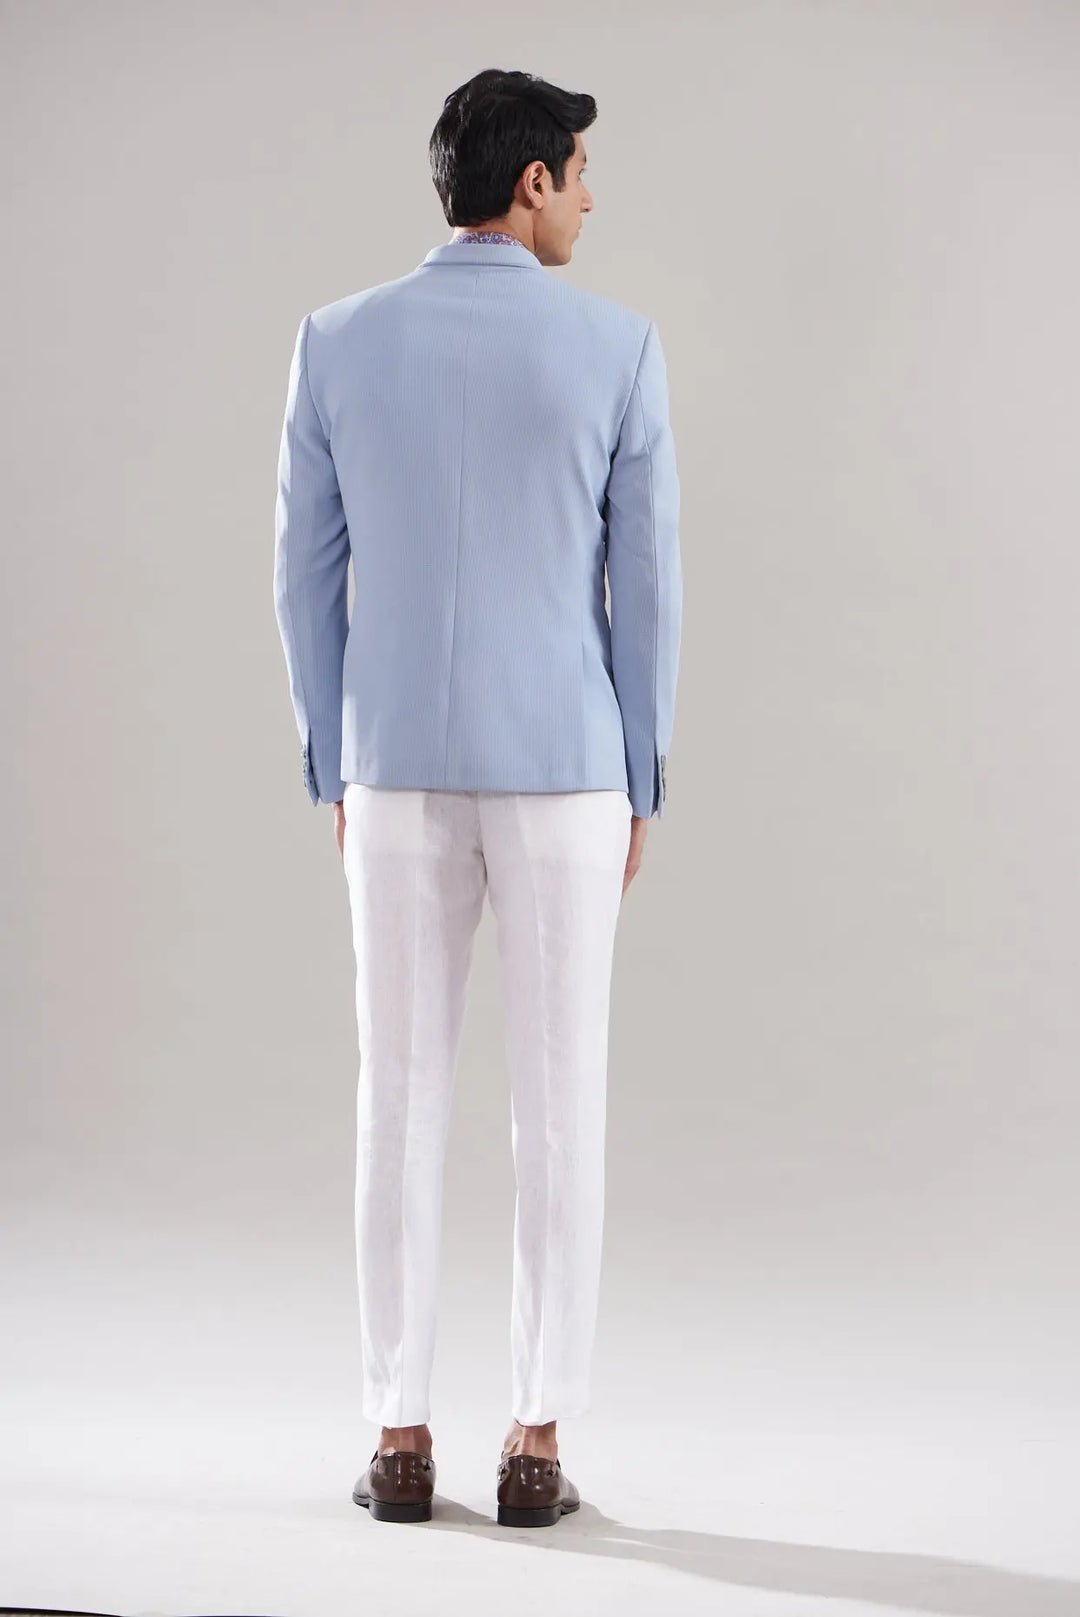 Powder Blue Stripe Textured Blazer Set - Asuka Couture